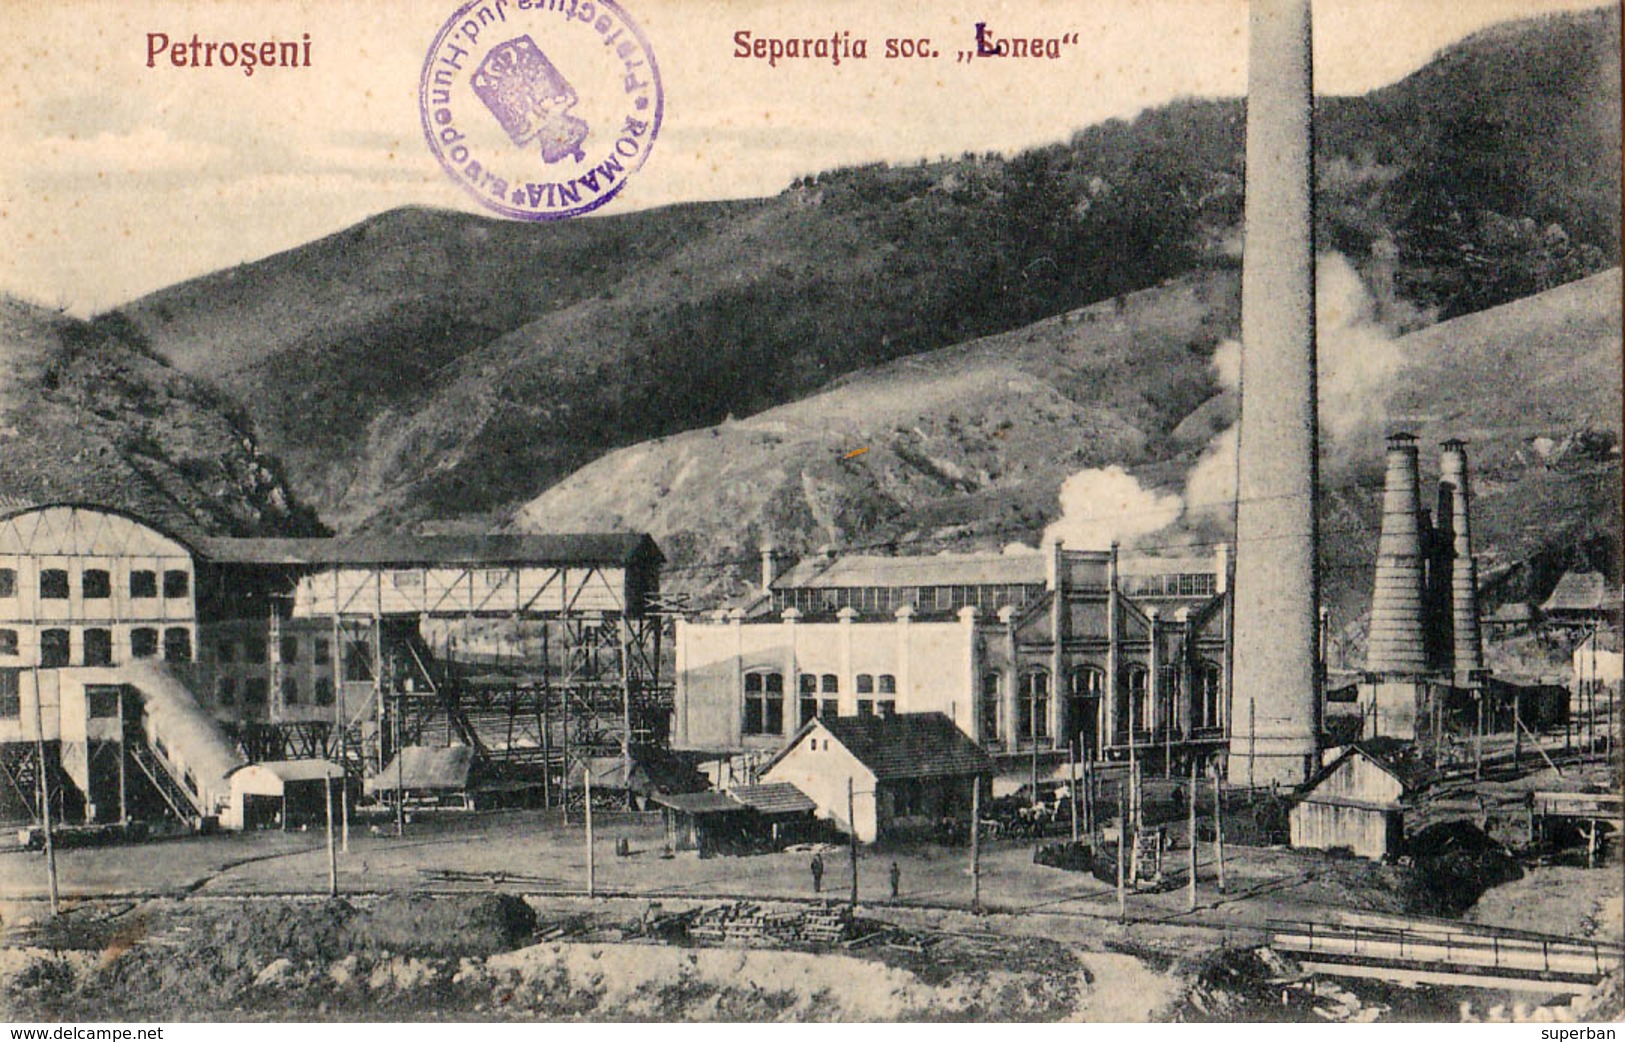 PETROSENI / PETROSANI : SEPARATIA SOC. LONEA - MINE DE CHARBON / COAL MINE - ANNÉE / YEAR ~ 1920 - '25 - RARE ! (v-693) - Roemenië